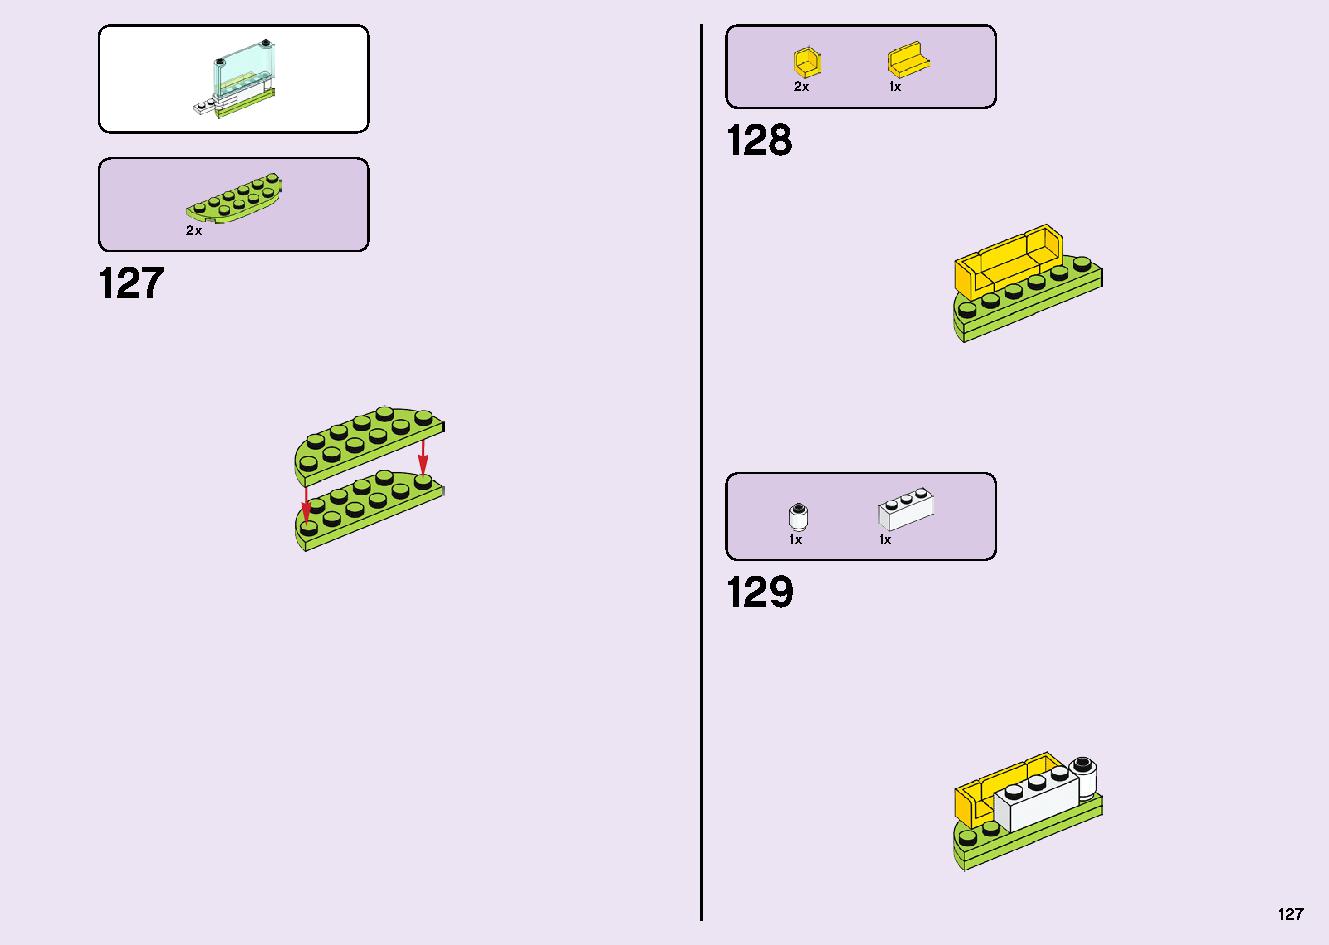 フレンズのうきうきハッピー・バス 41395 レゴの商品情報 レゴの説明書・組立方法 127 page